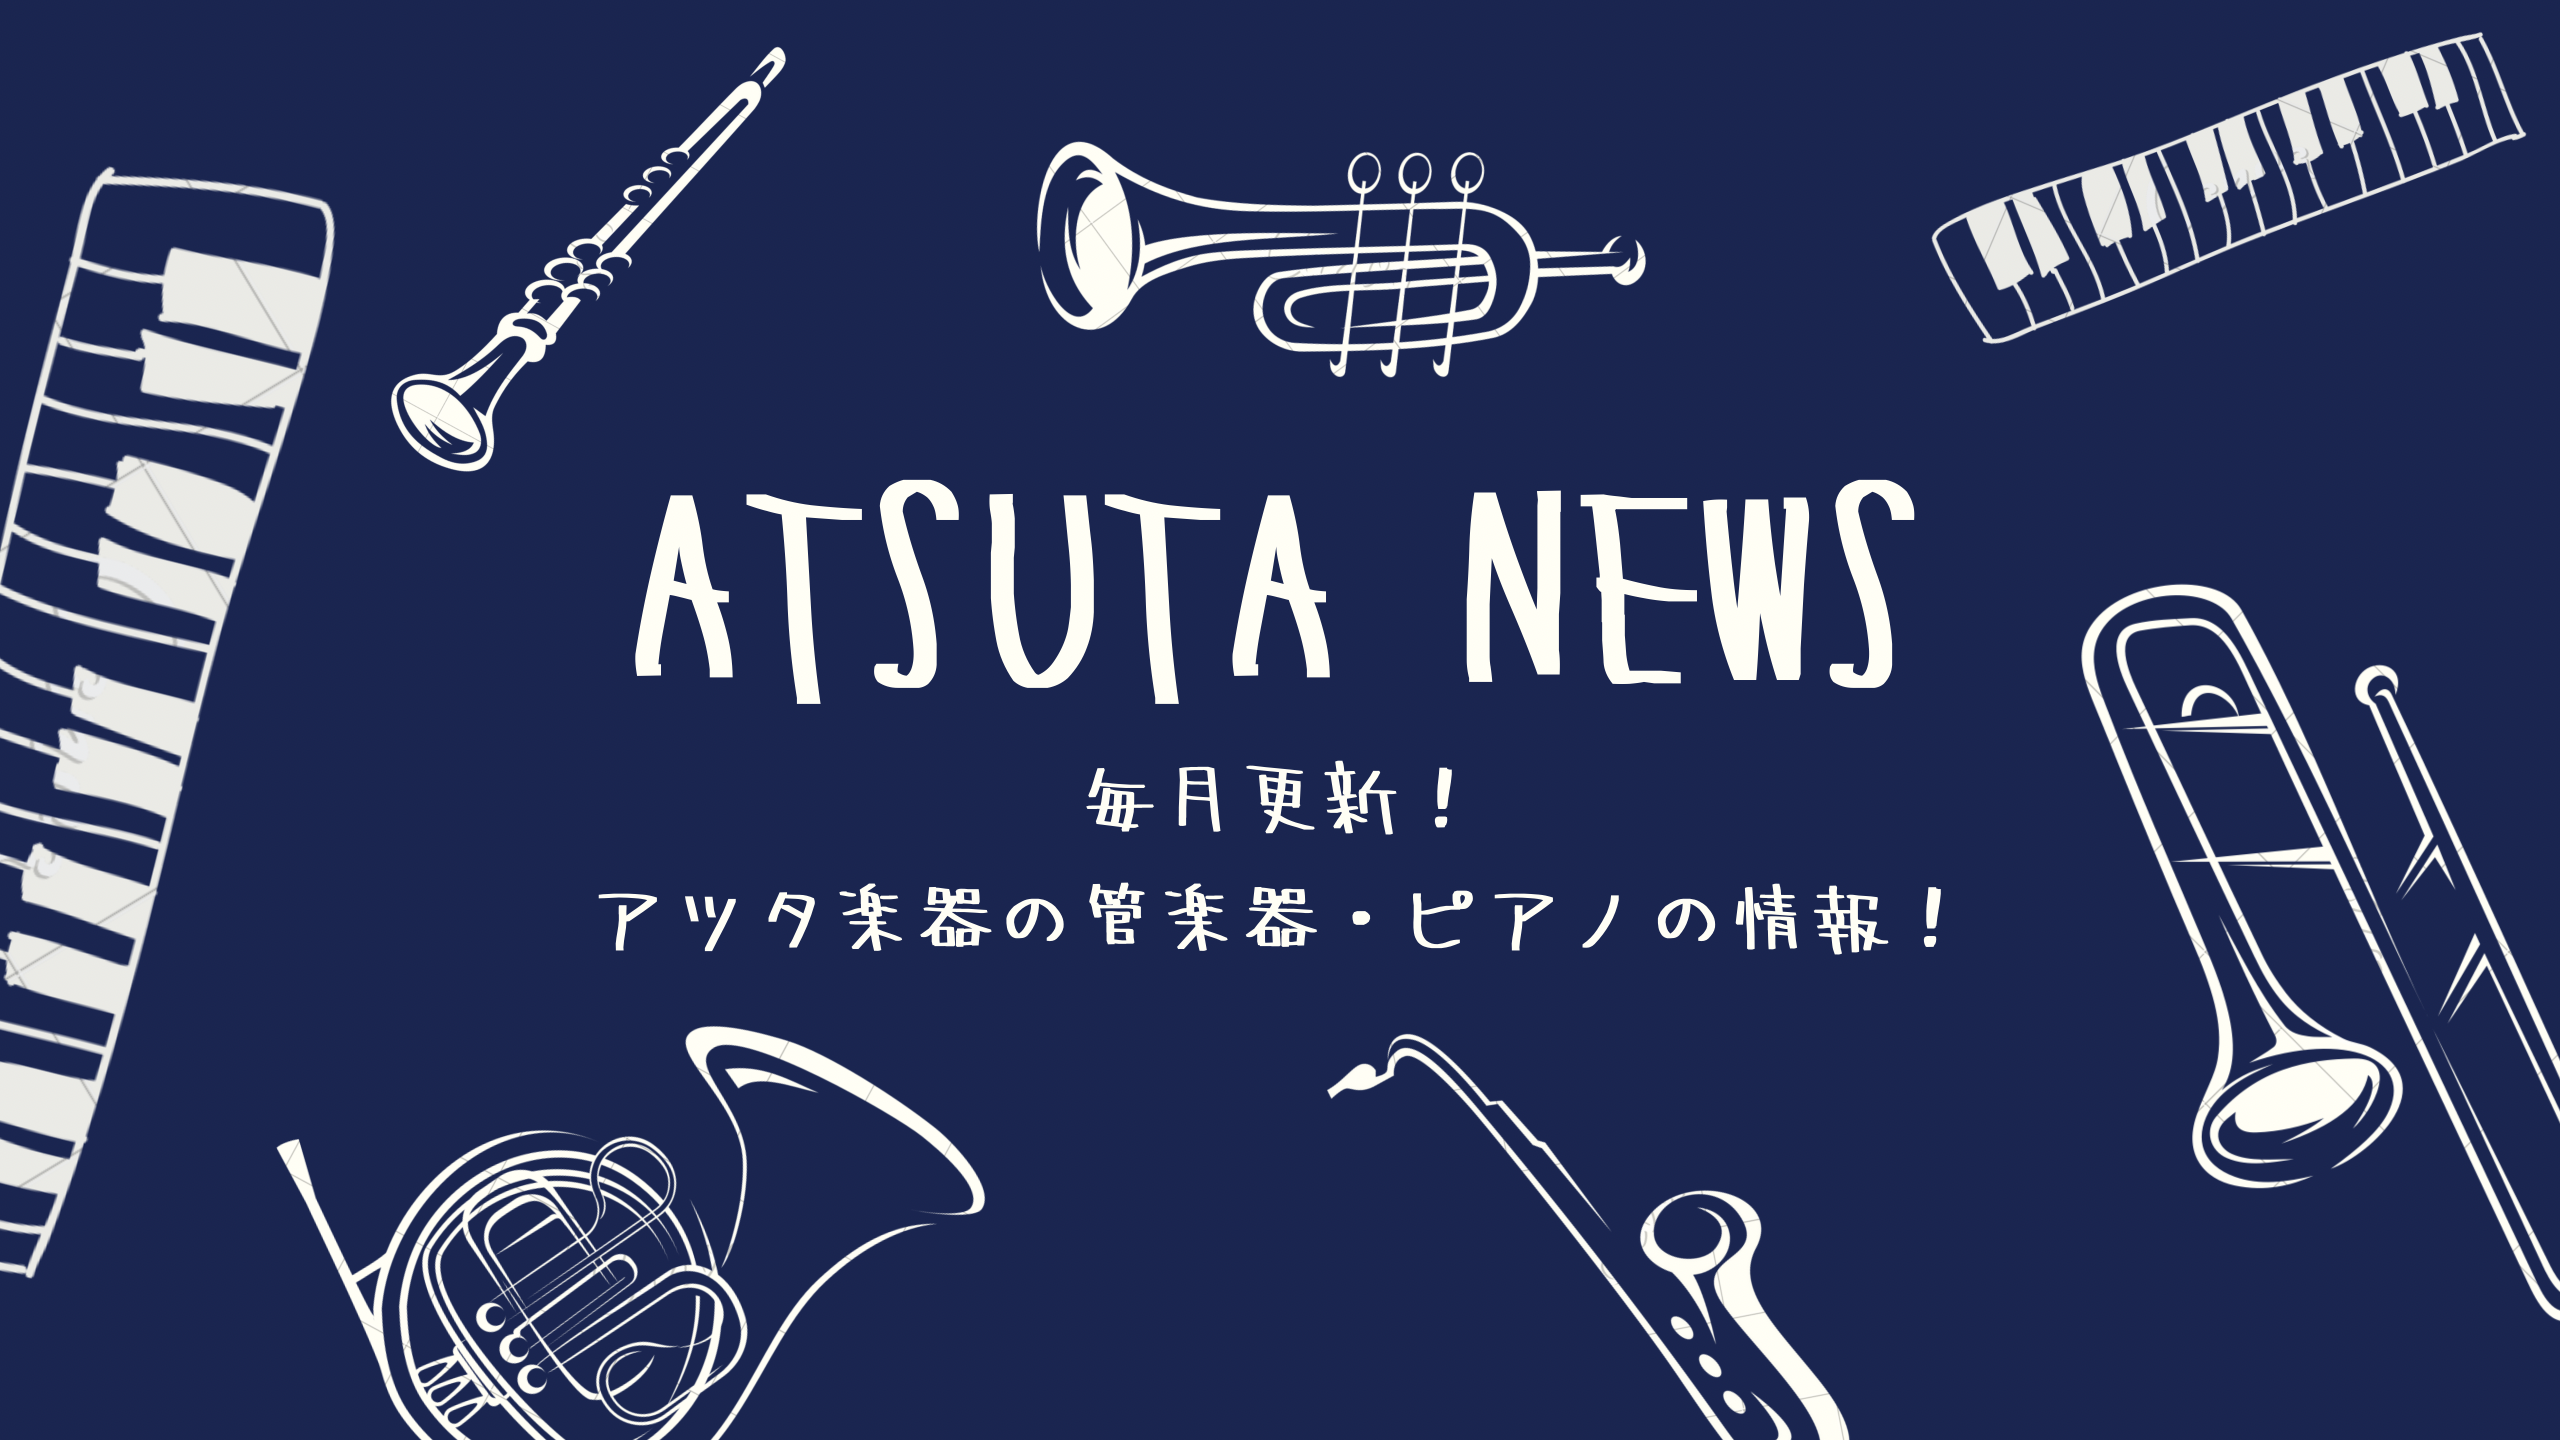 ATSUTA NEWS Vol.13